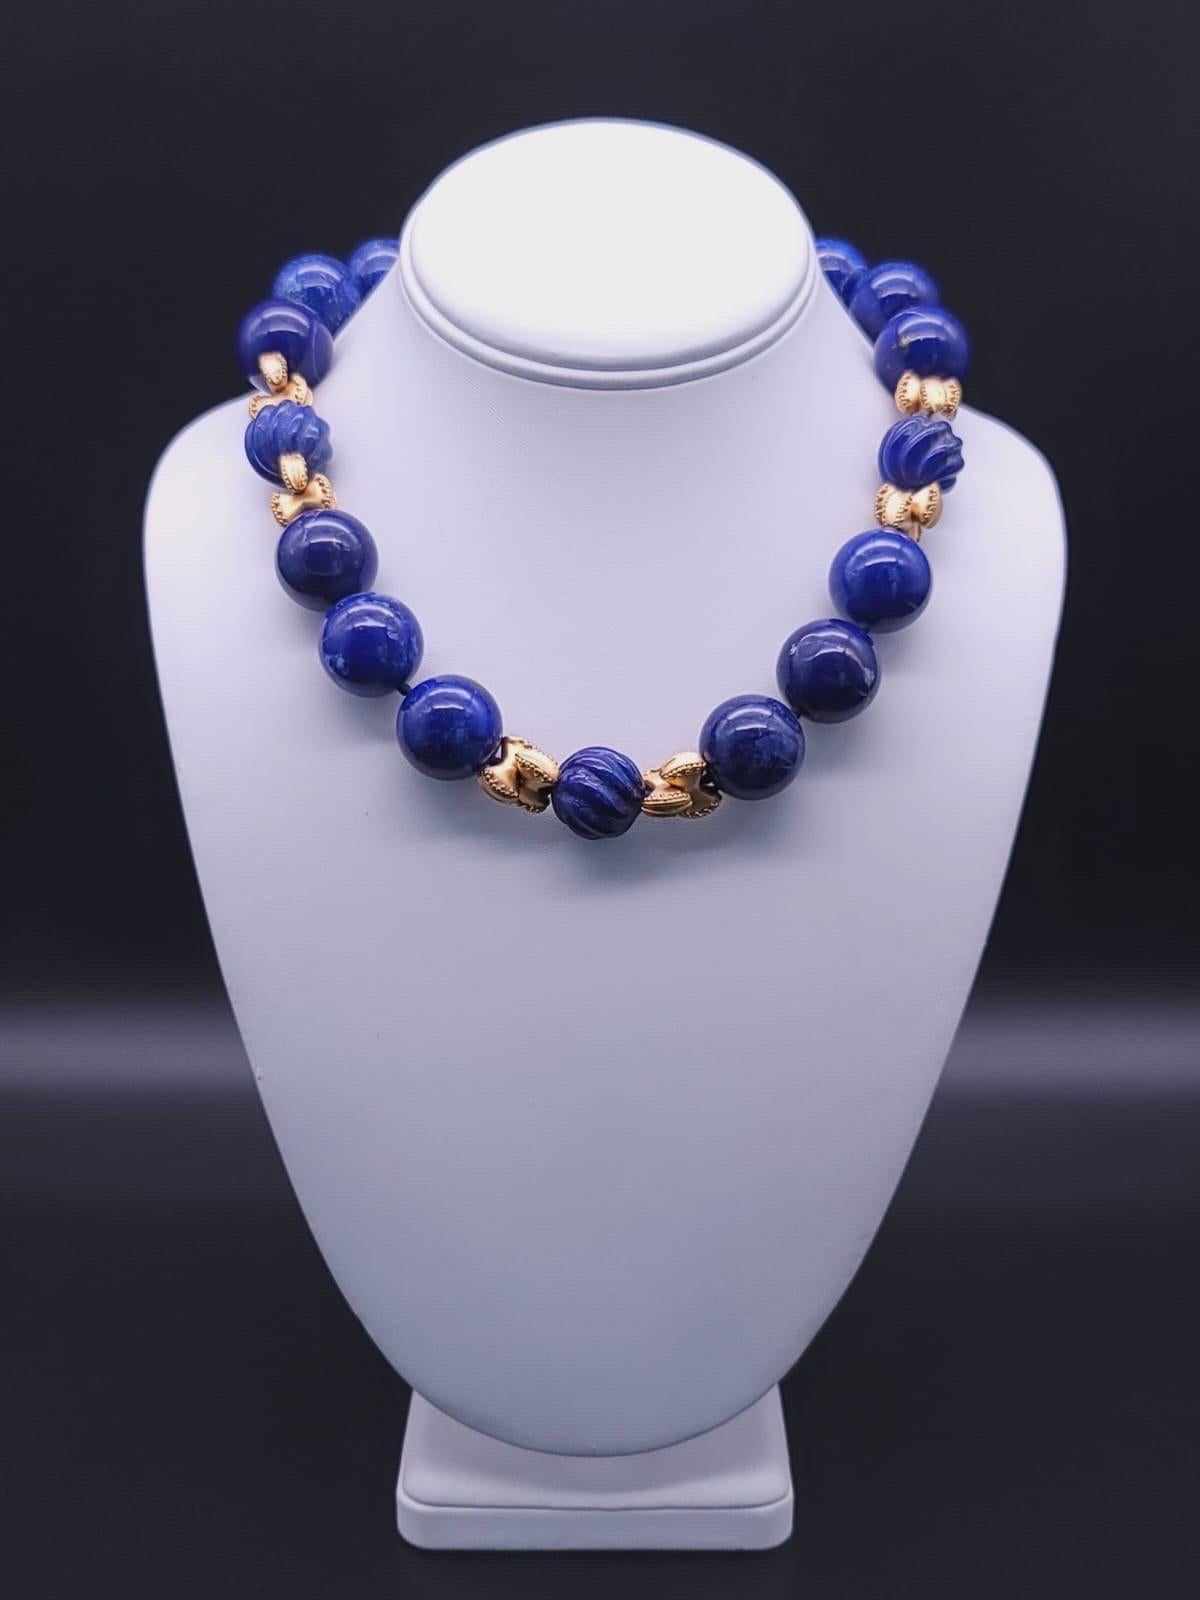 A.Jeschel Large Lapis Lazuli with vermeil knots necklace. 10